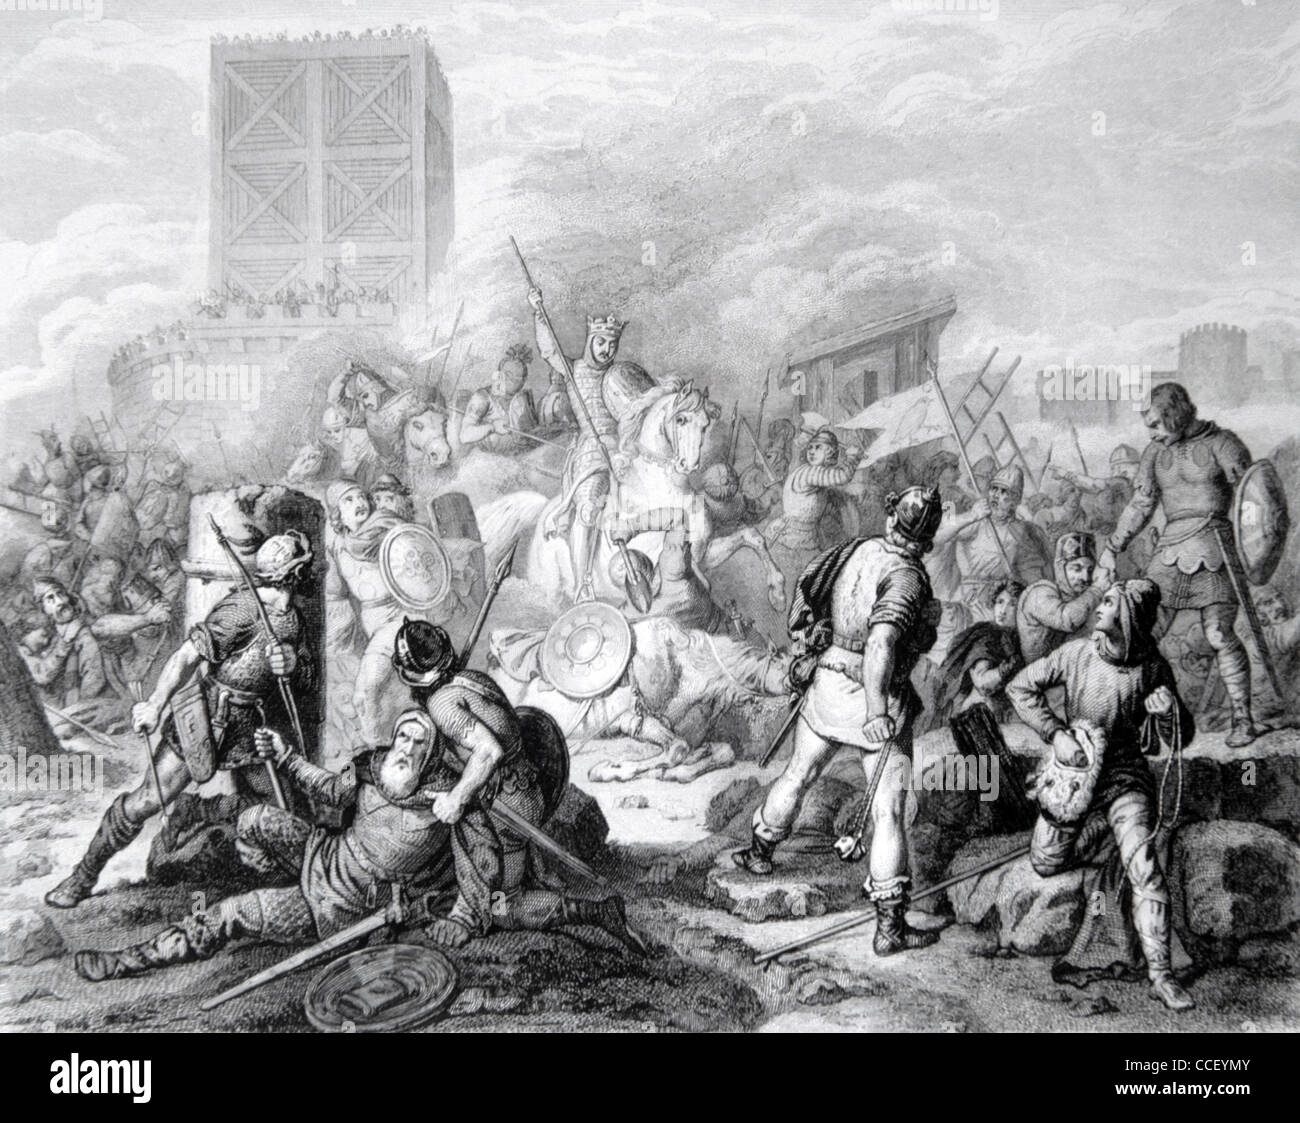 Paris belagert oder unter Belagerung durch die Wikinger, oder die Wikingerbelagerung von Paris (885-886AD) Vintage Illustration oder Gravur Stockfoto